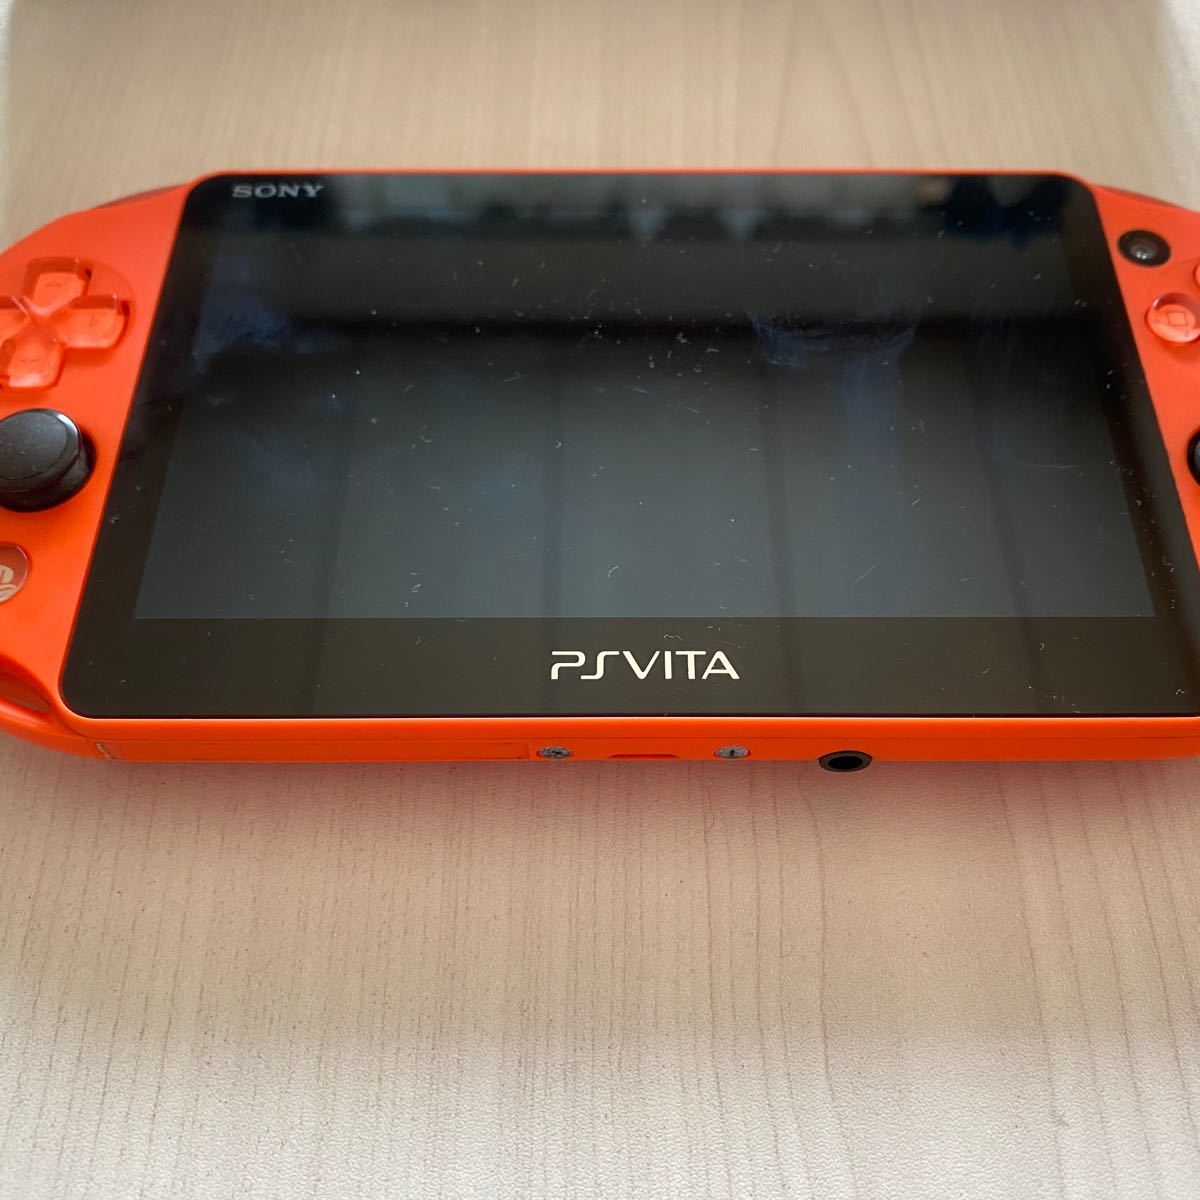 PS Vita PCH-2000 neon orange